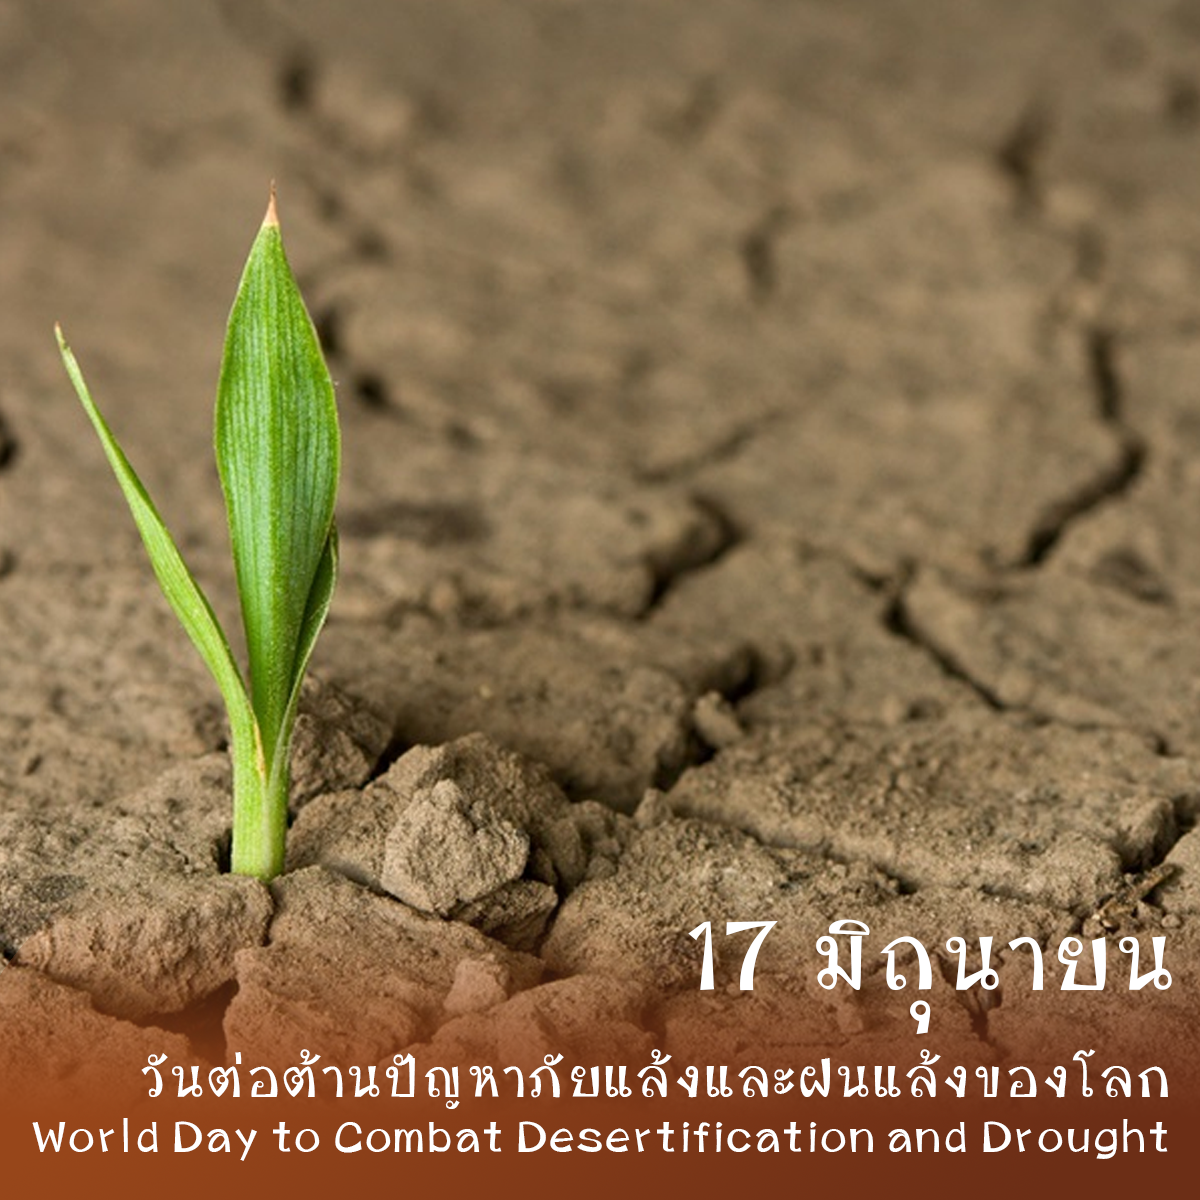 วันต่อต้านปัญหาภัยแล้งและฝนแล้งของโลก (World Day to Combat Desertification and Drought)